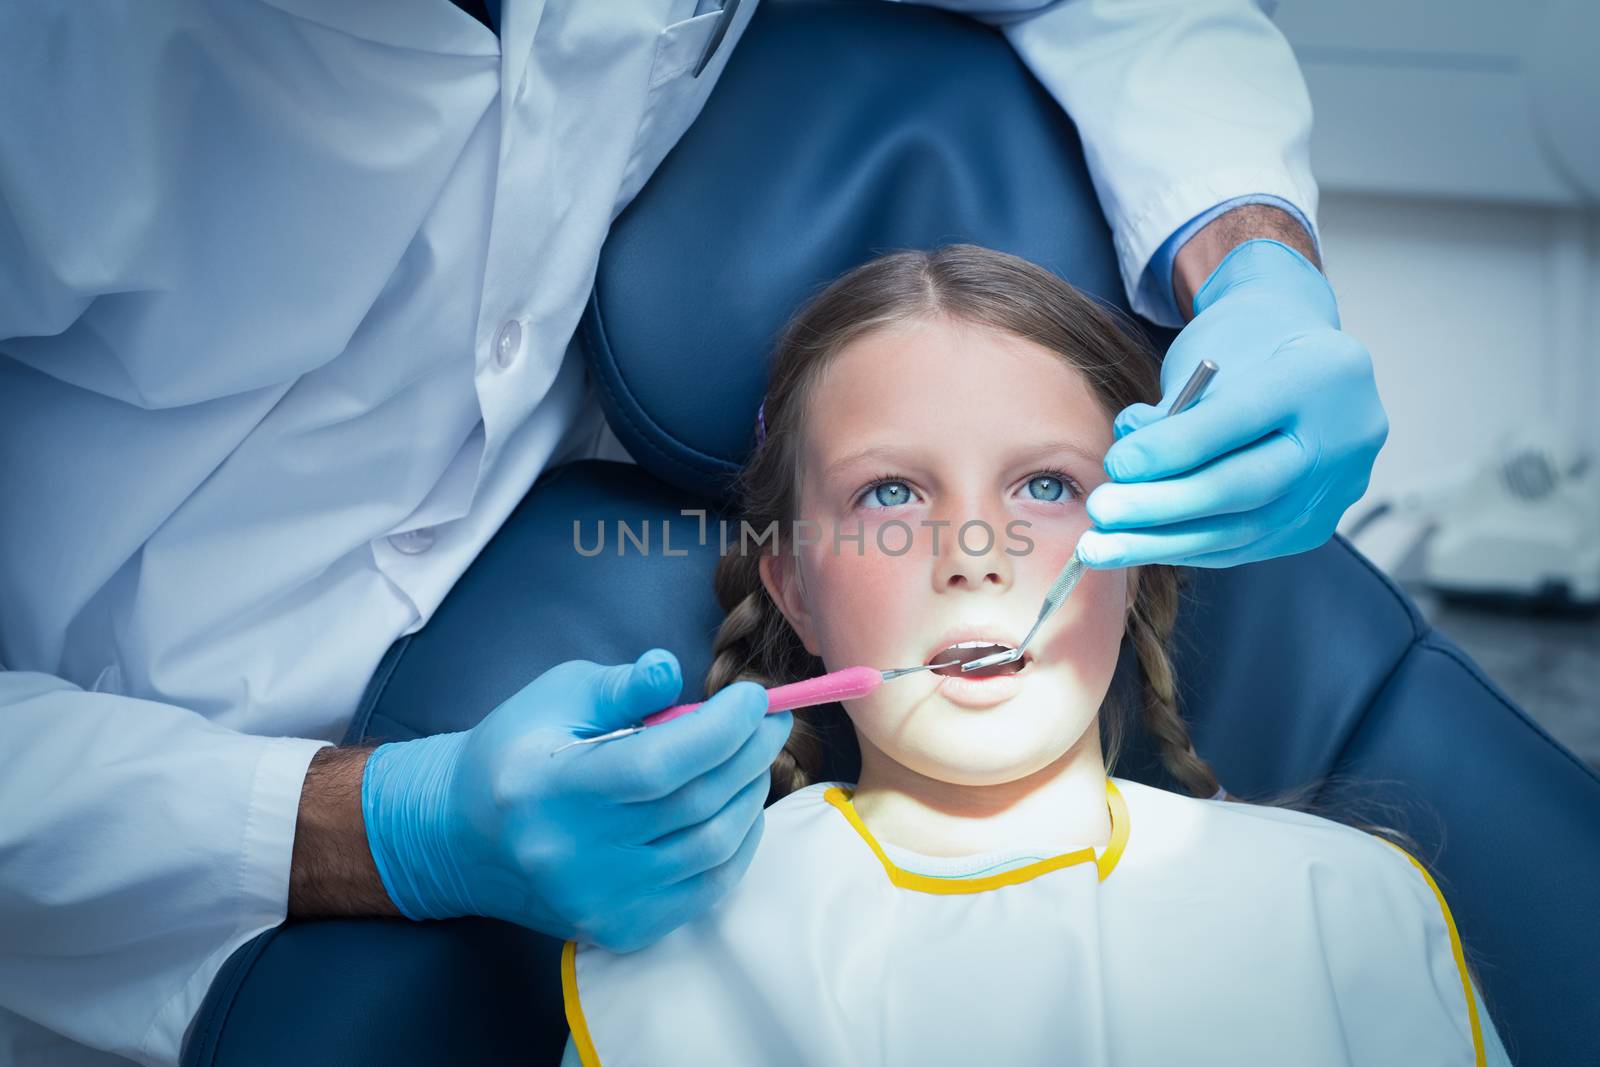 Male dentist examining girls teeth by Wavebreakmedia